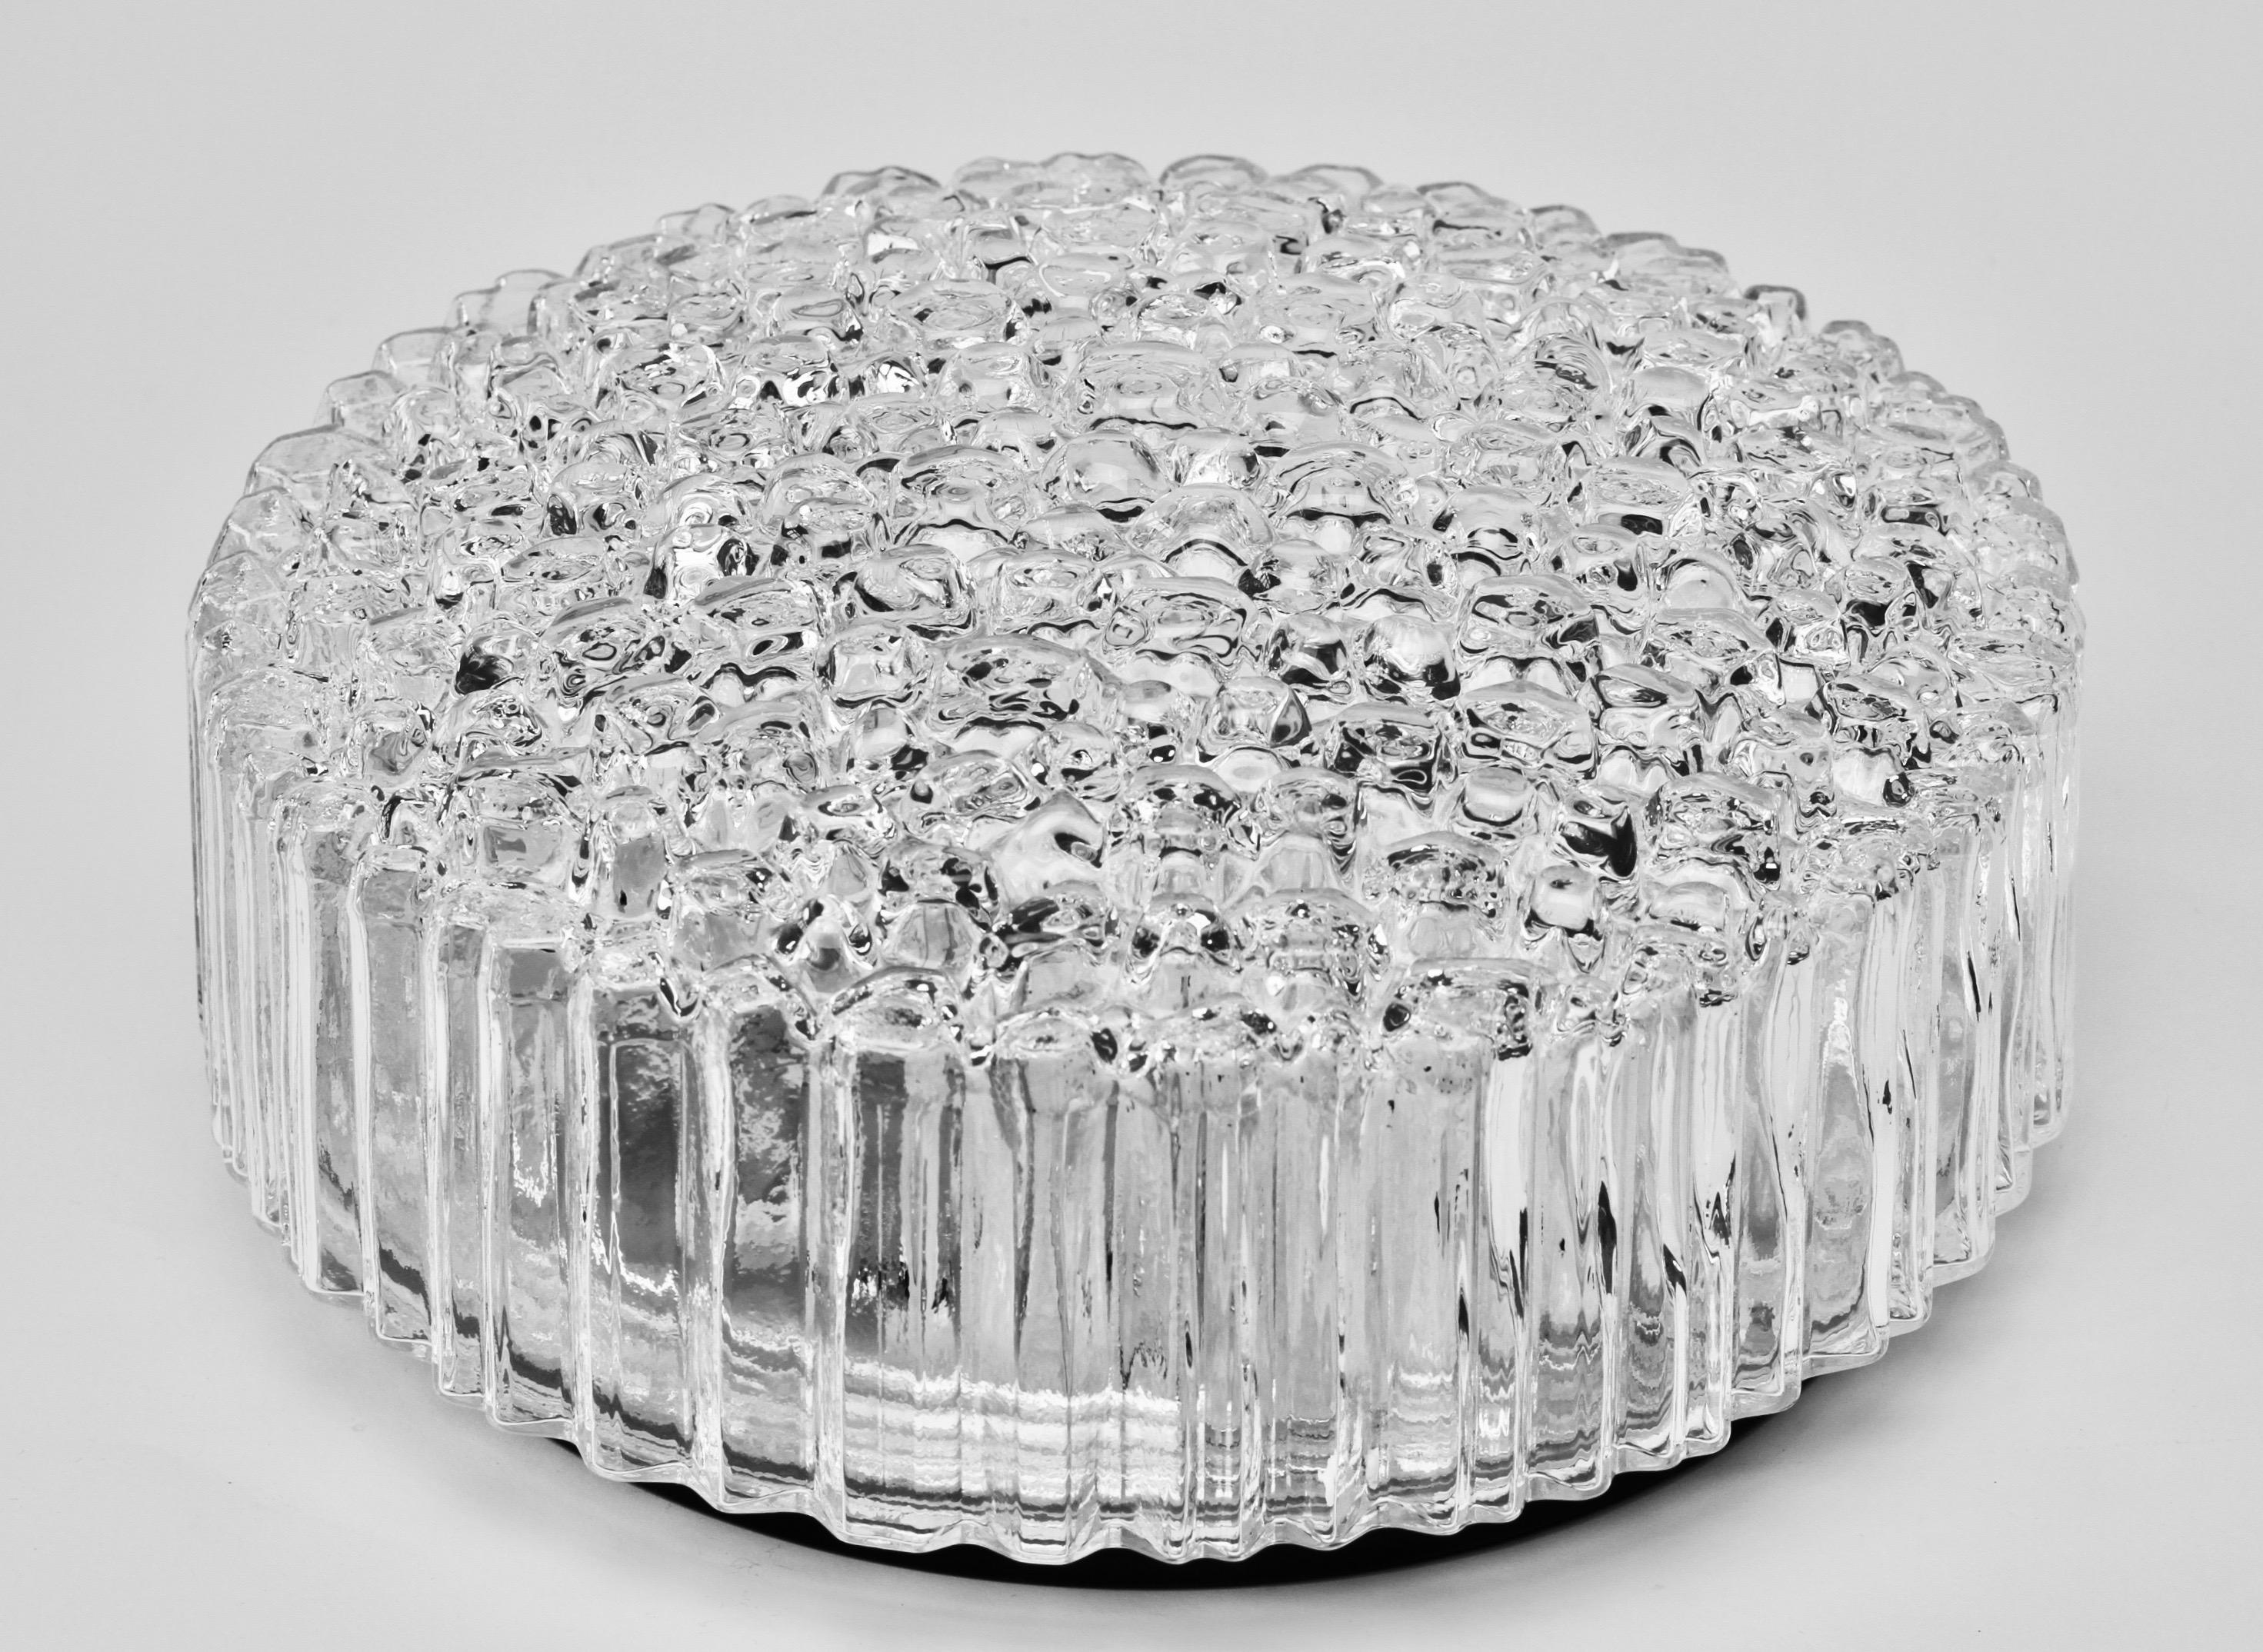 Eine von fünf flächenbündigen Leuchten oder Wandleuchtern von Glashütte Limburg, ca. 1970er Jahre. Mit ihrem wunderschönen mundgeblasenen, geformten und strukturierten Klarglasschirm, der an Eiskristalle erinnert, leuchtet diese Vintage-Lampe aus